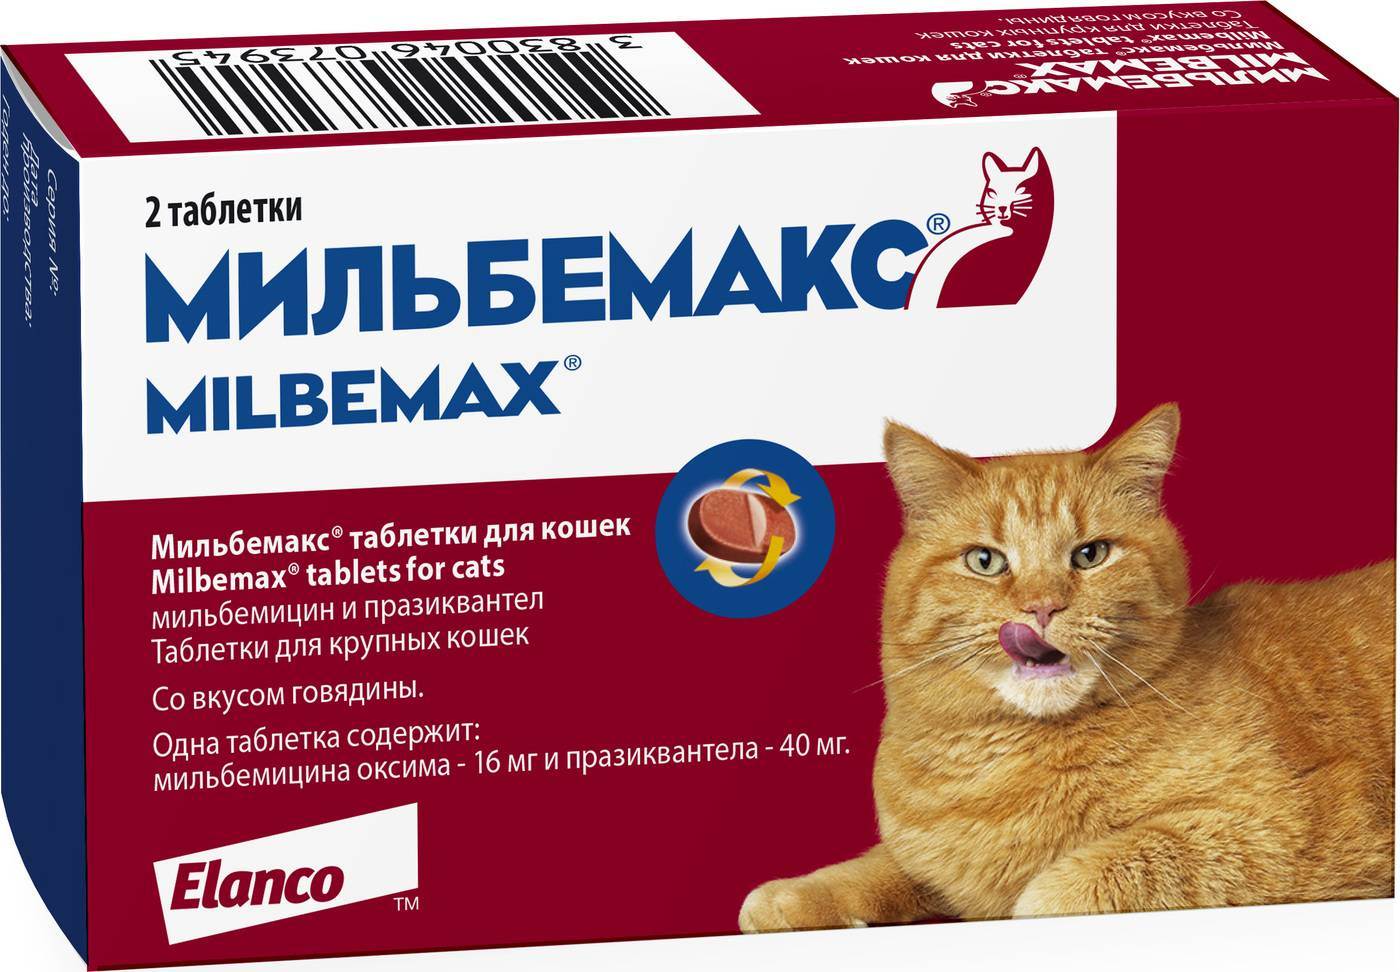 «мильбемакс»: инструкция по применению препарата для кошек